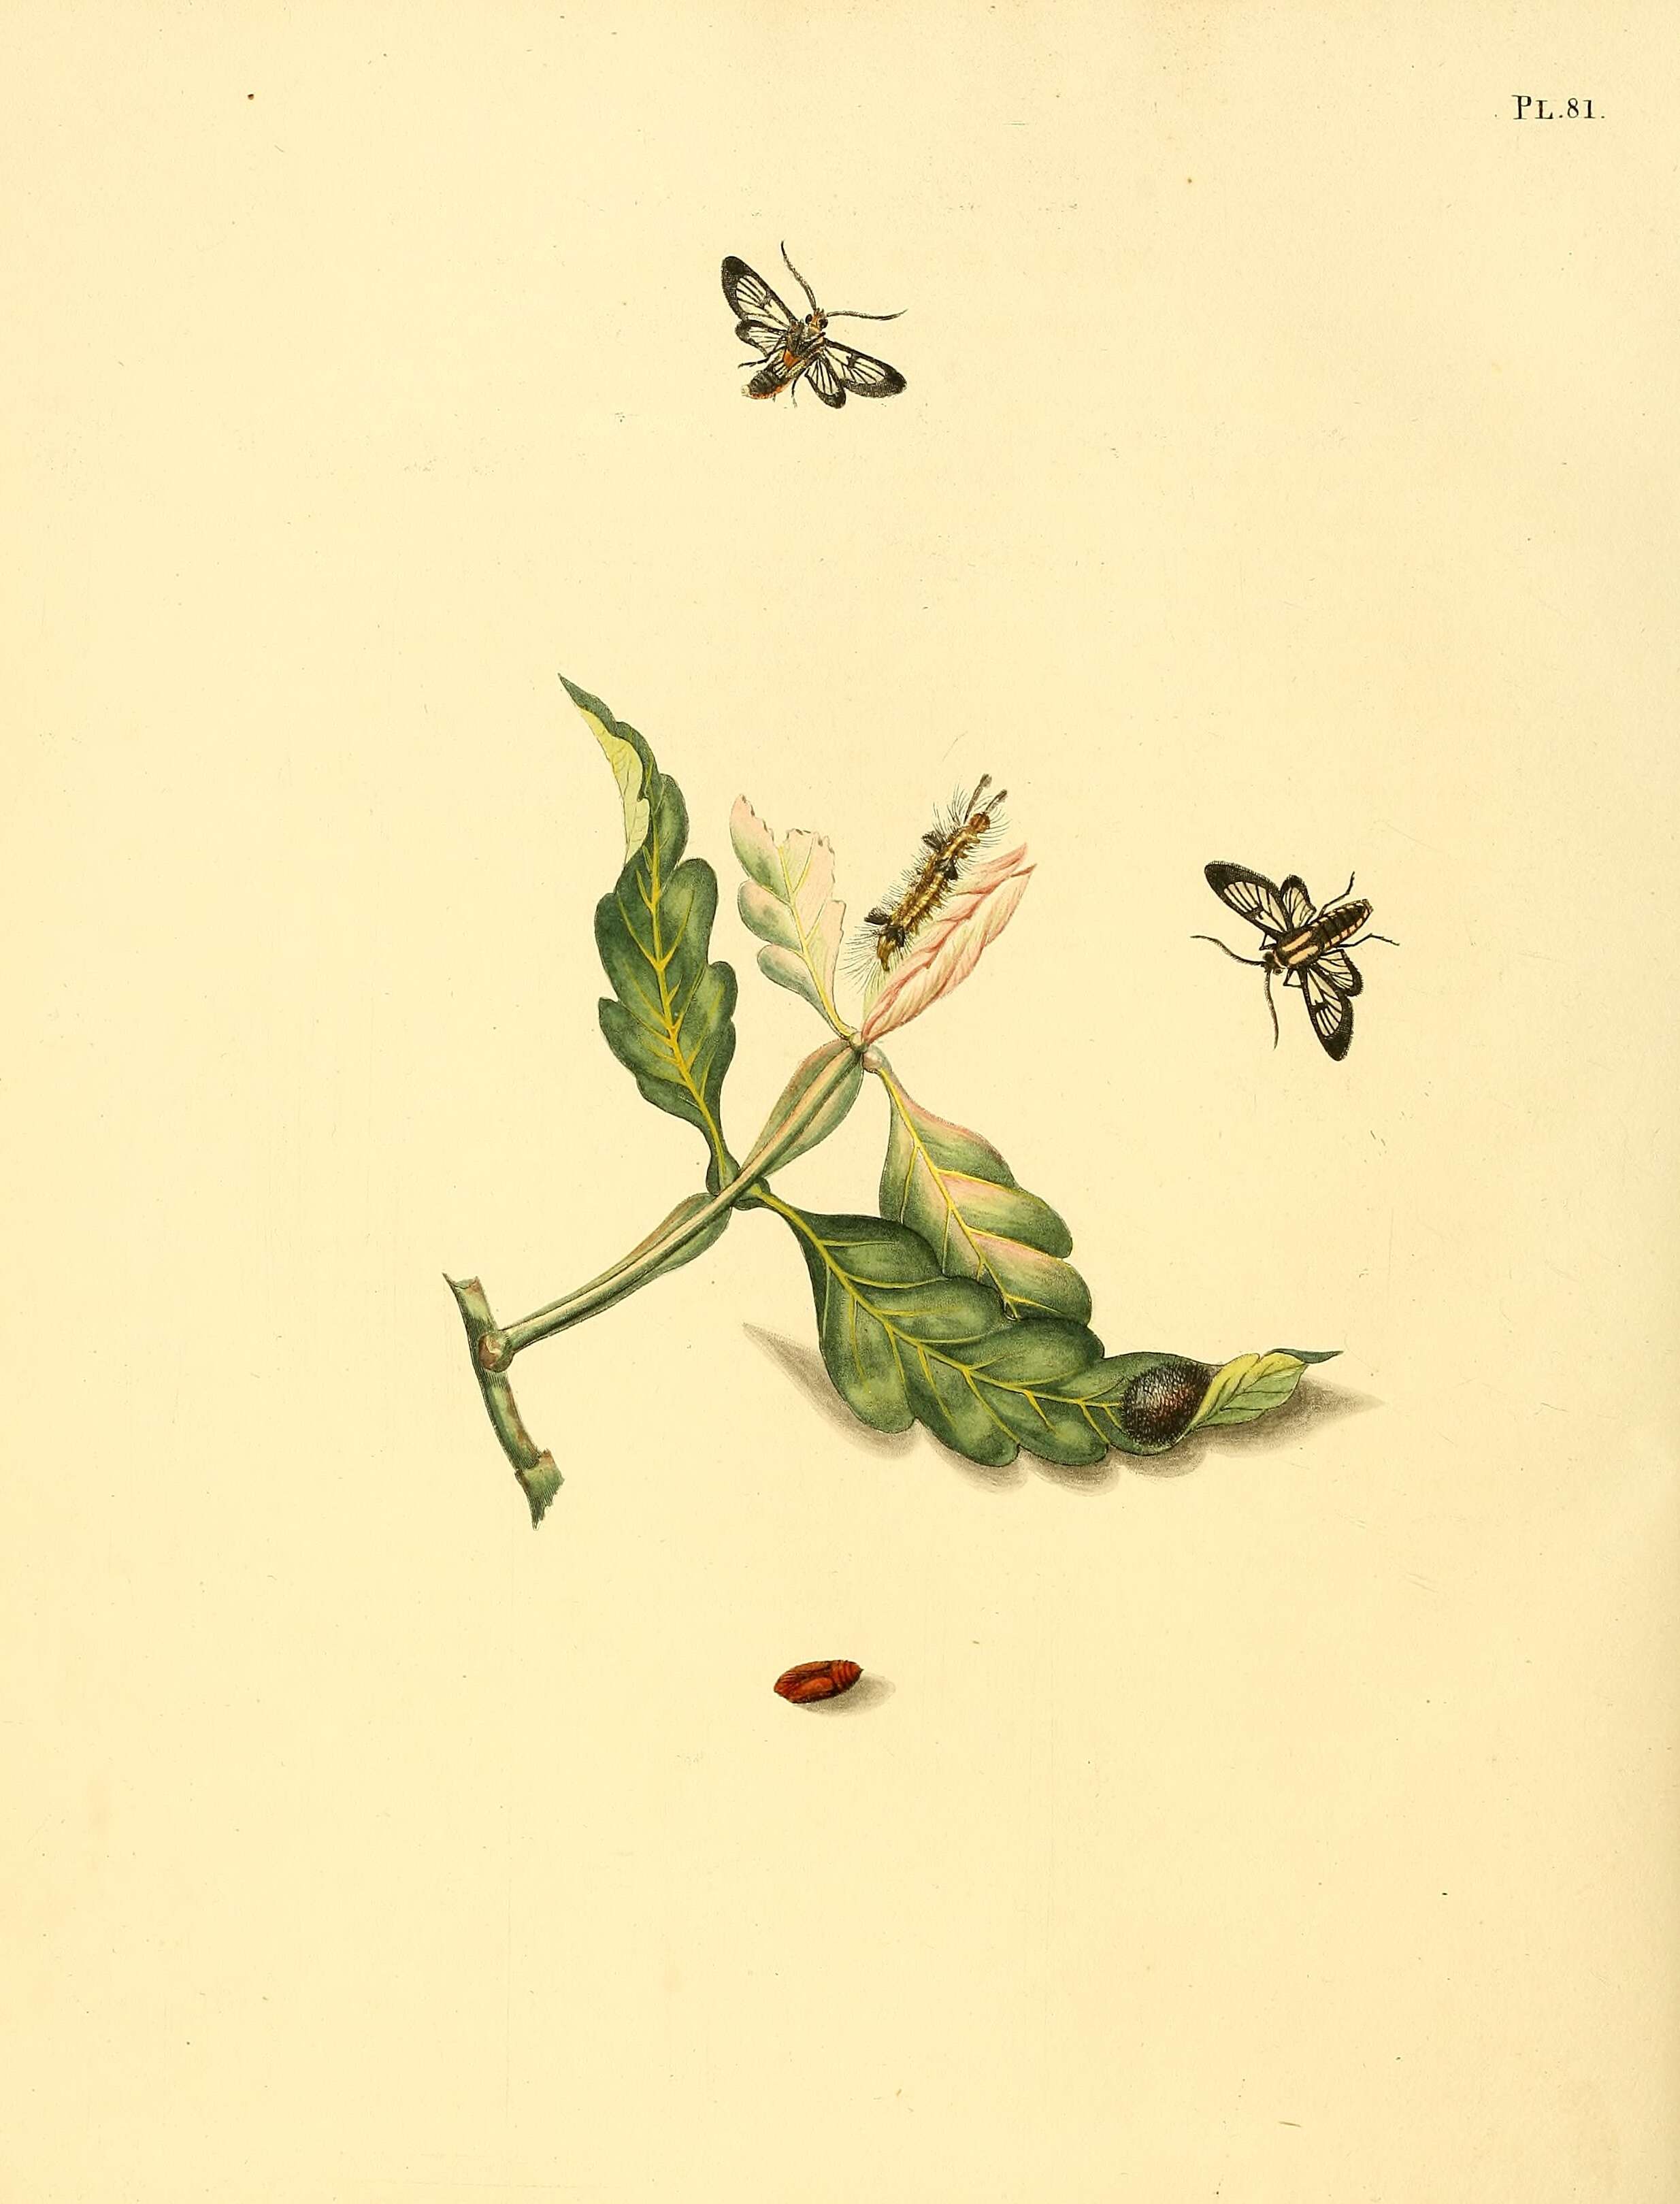 Image of Loxophlebia diaphana Sepp 1848